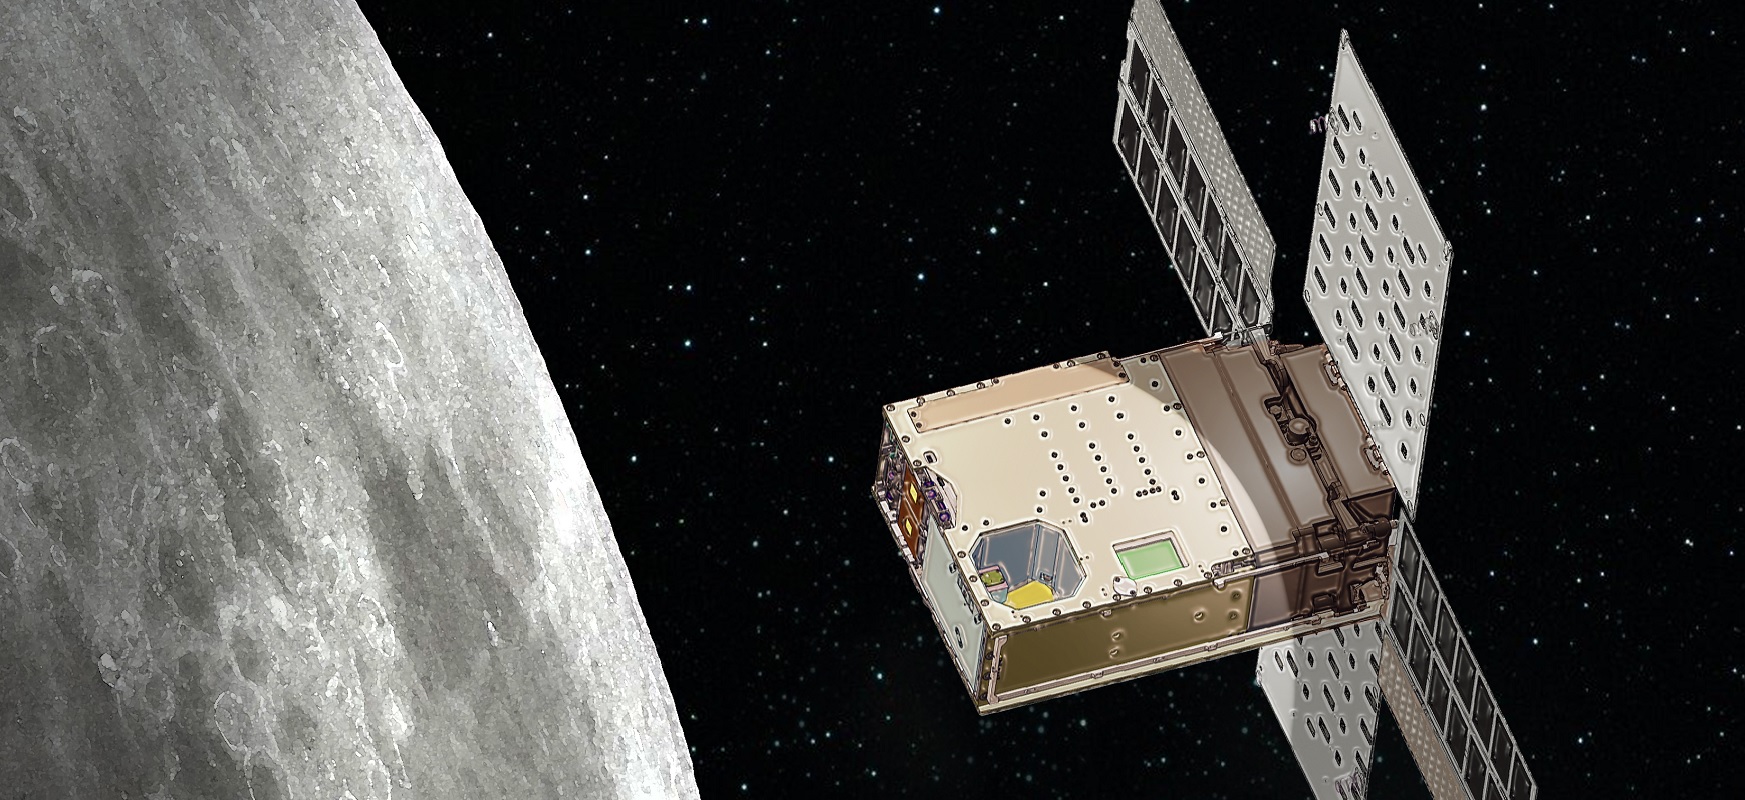 Cubesats ilargira hegan egingo dute Artemisa misioaren baitan. Astronauten aurretik ere